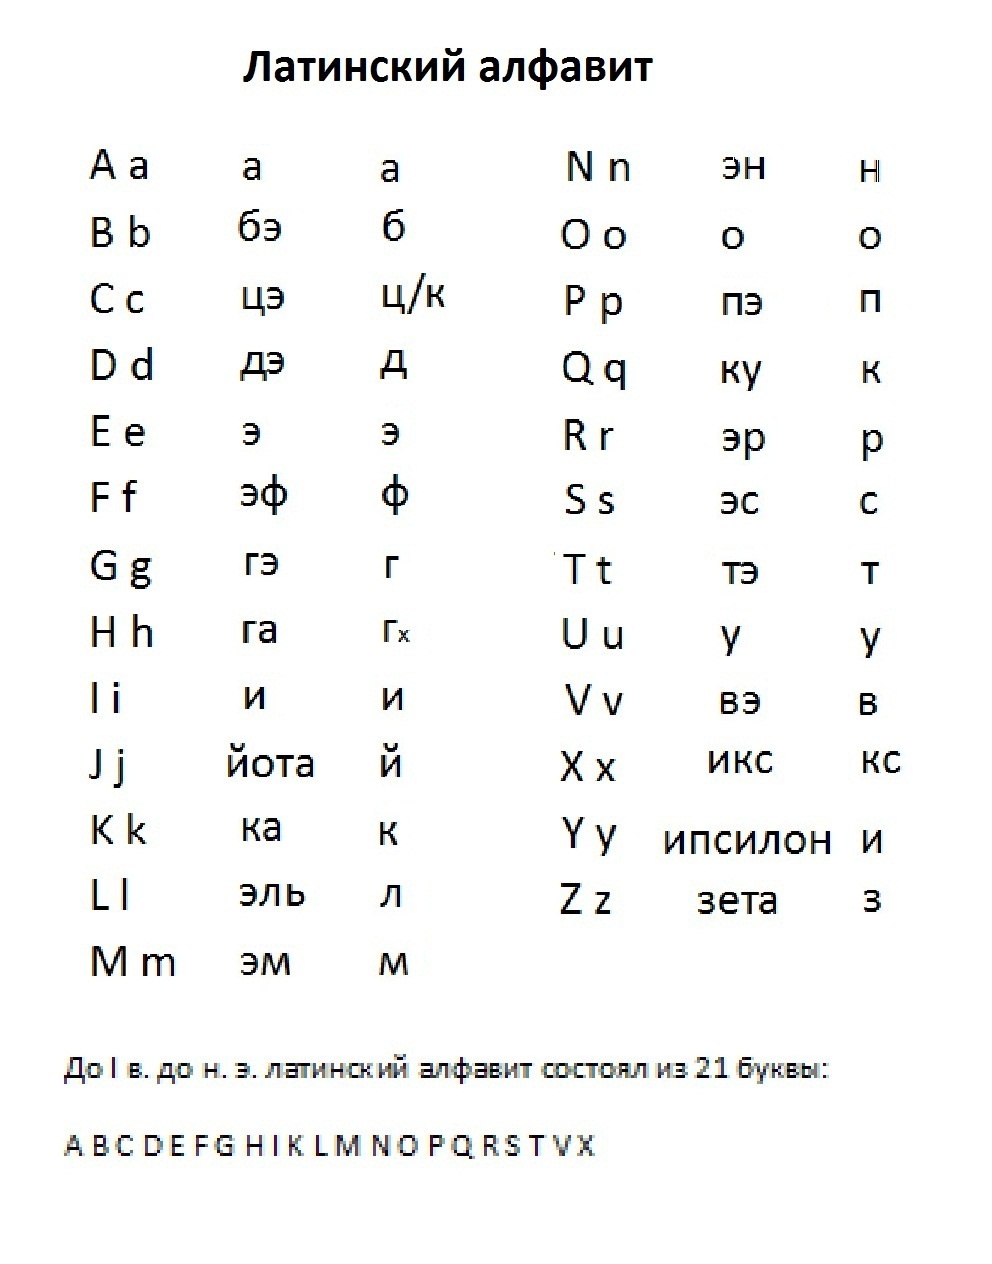 Латинский алфавит с правильным произношением